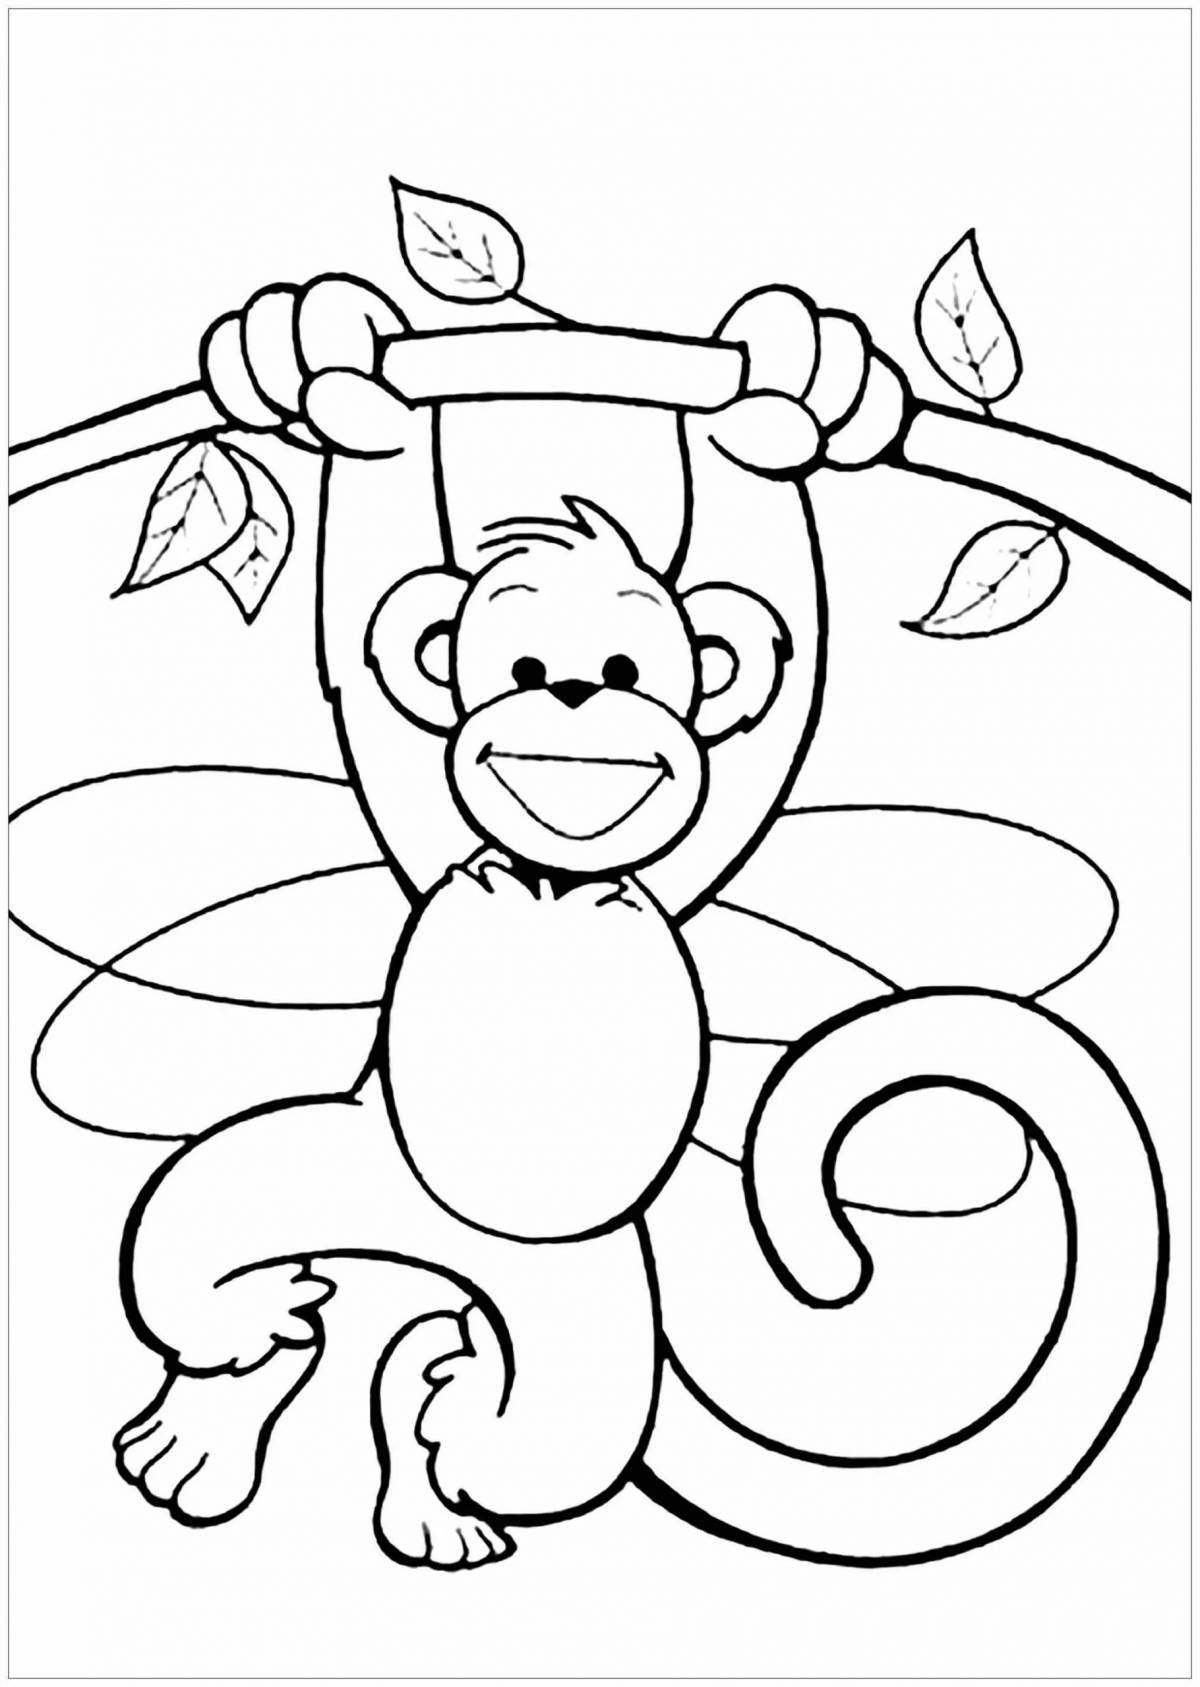 Великолепная раскраска обезьяны для детей